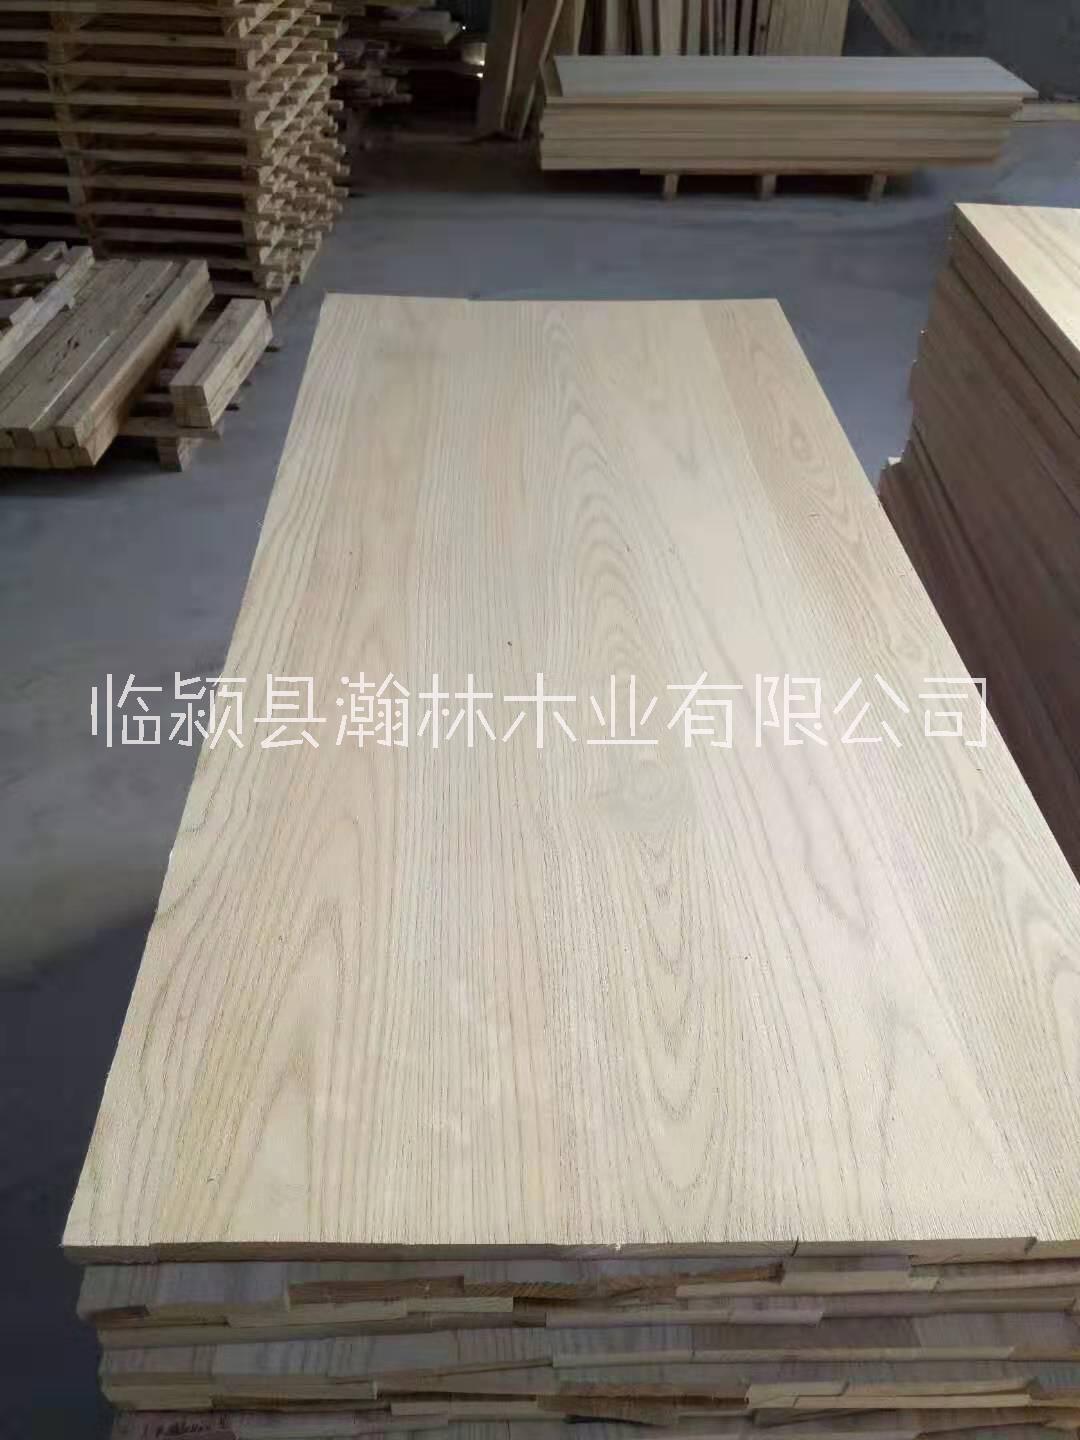 白椿木拼板 白椿木餐桌面板材厂家专业定制加工各种拼板材料图片